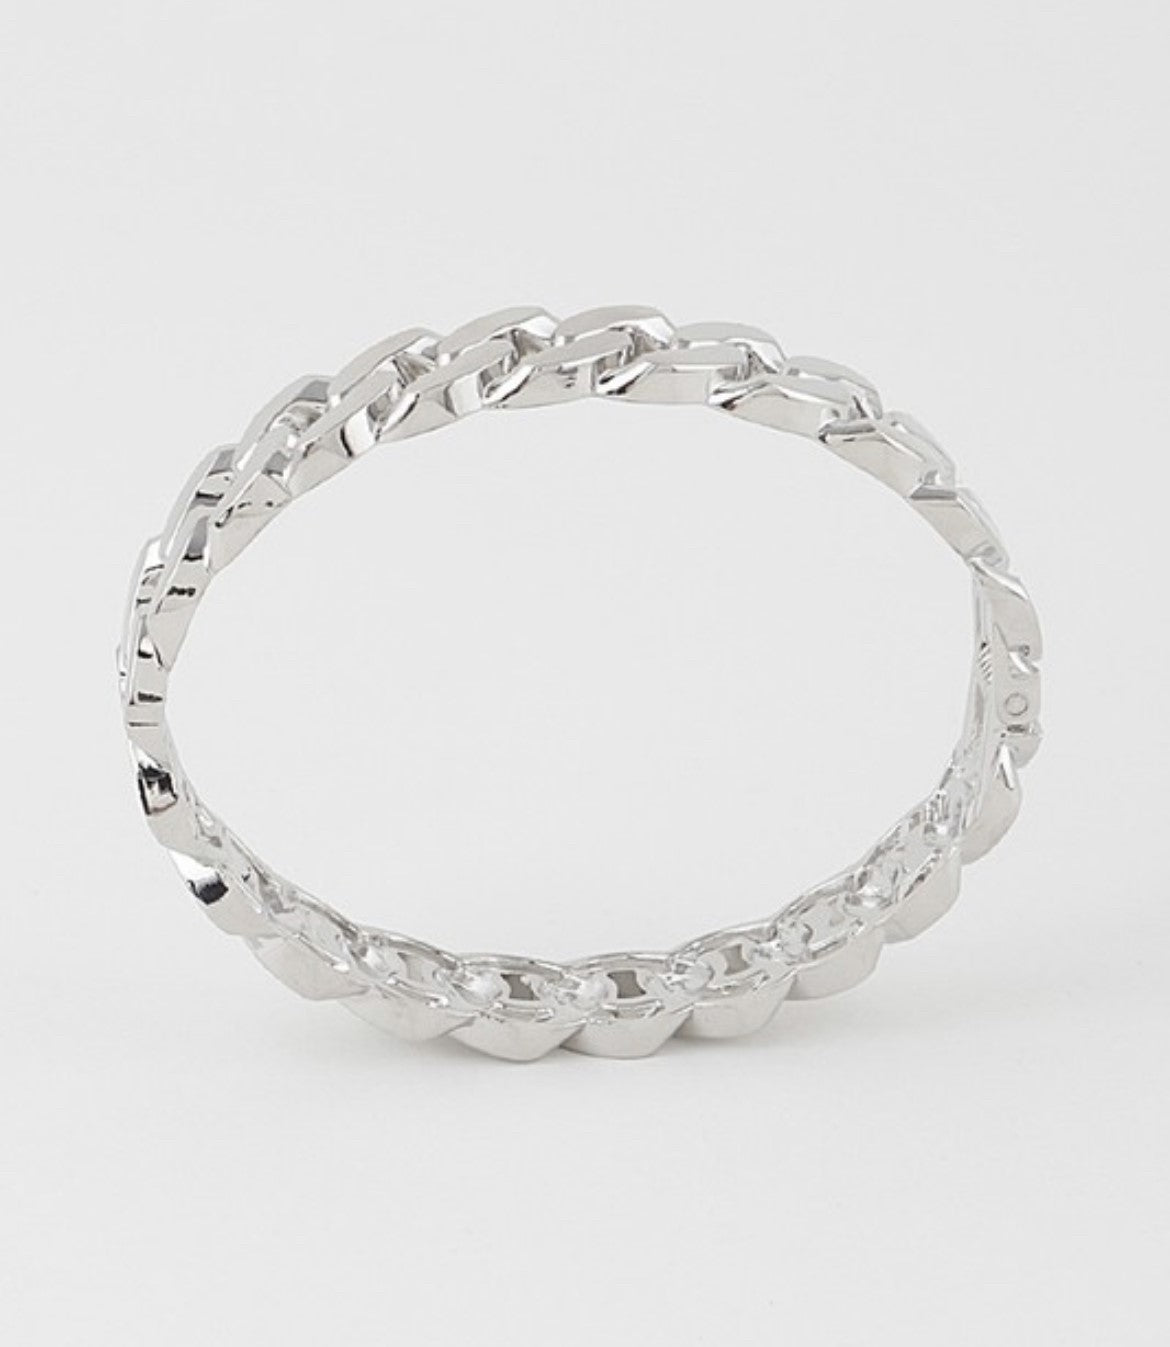 Chain Cuff Bracelet